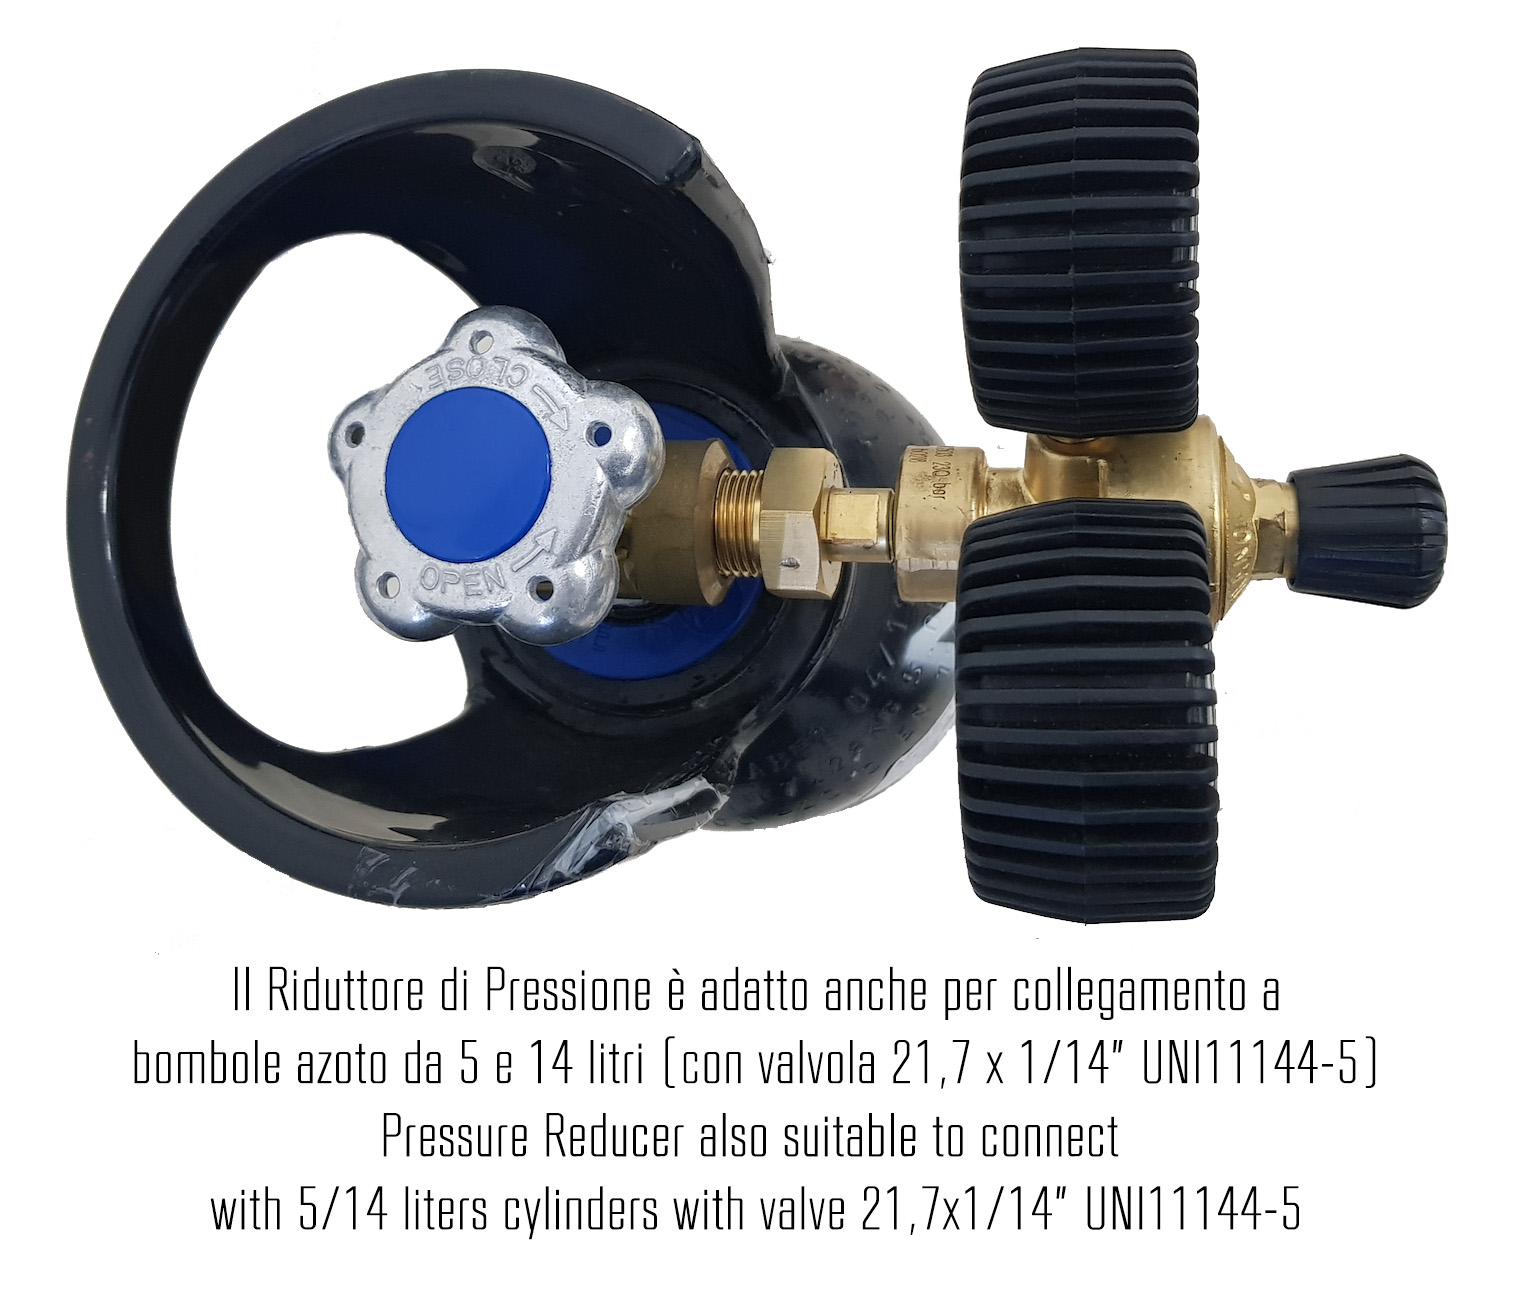 K-Leak Tester N2H2 AUTO - Kit cercafughe azoto/idrogeno per impianti condizionamento auto (adatto anche per collegamento a bombole industriali) - Foto 4